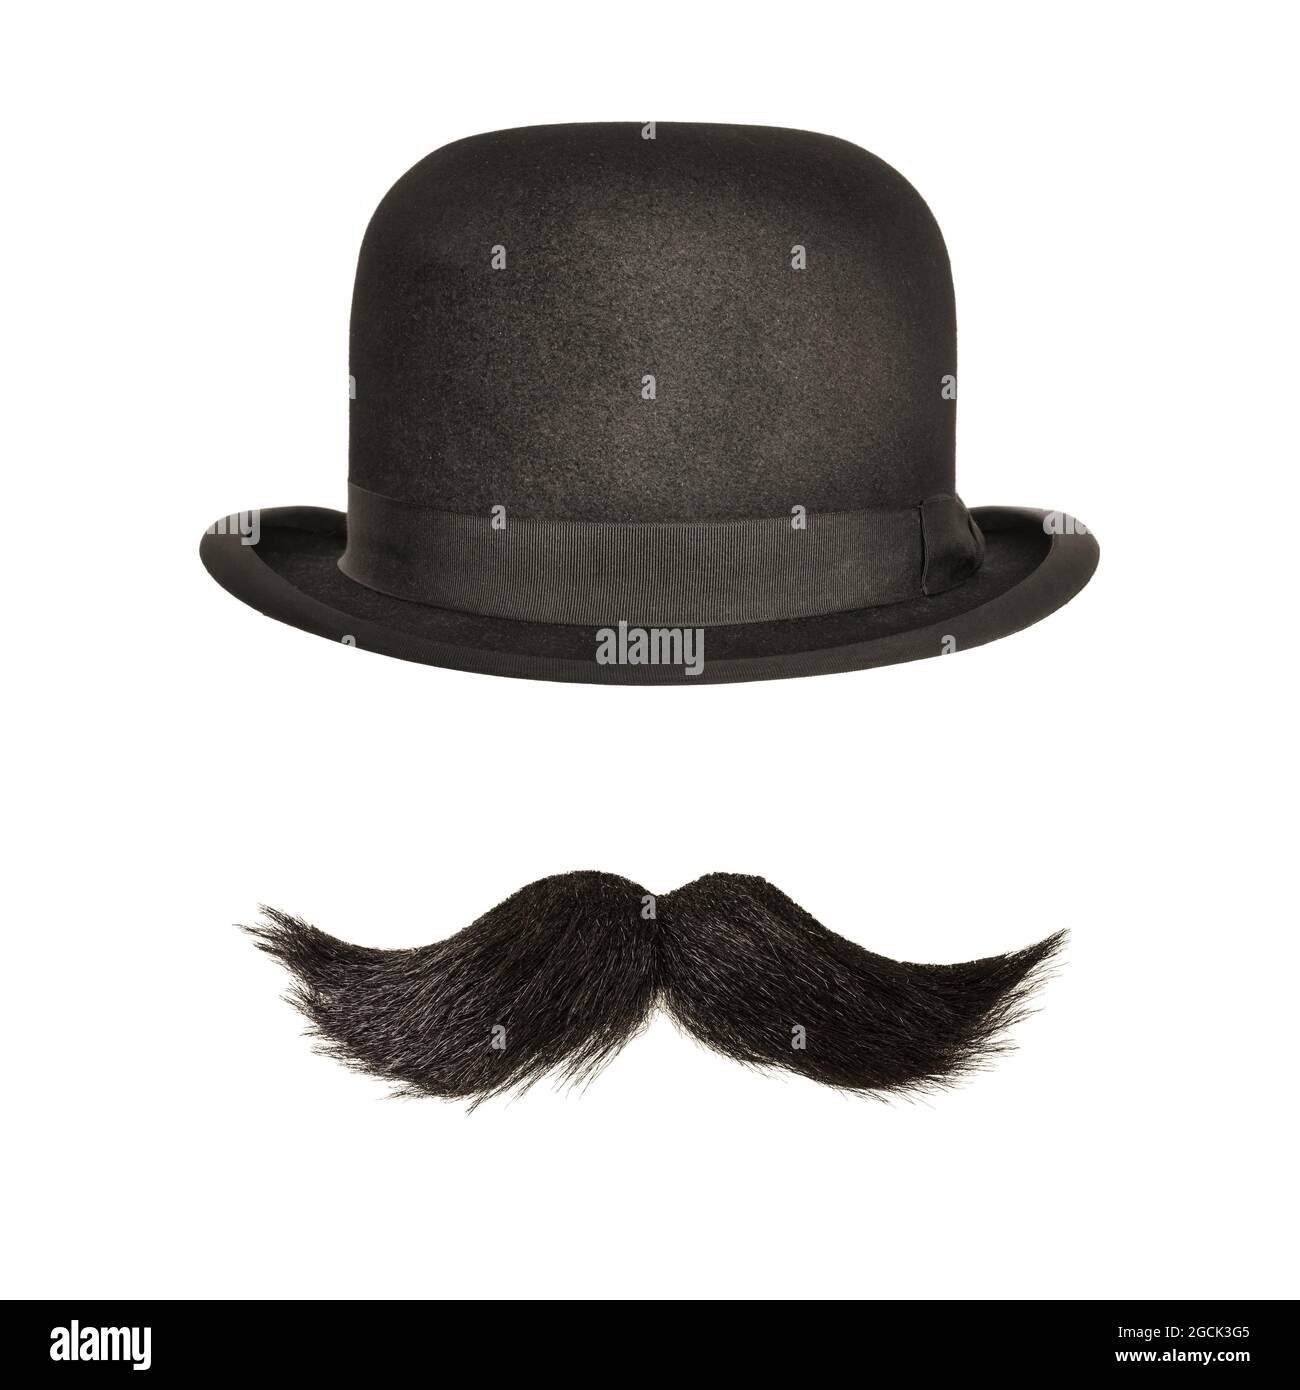 Cappello bowler vintage con baffi neri ricci isolati su sfondo bianco Foto Stock